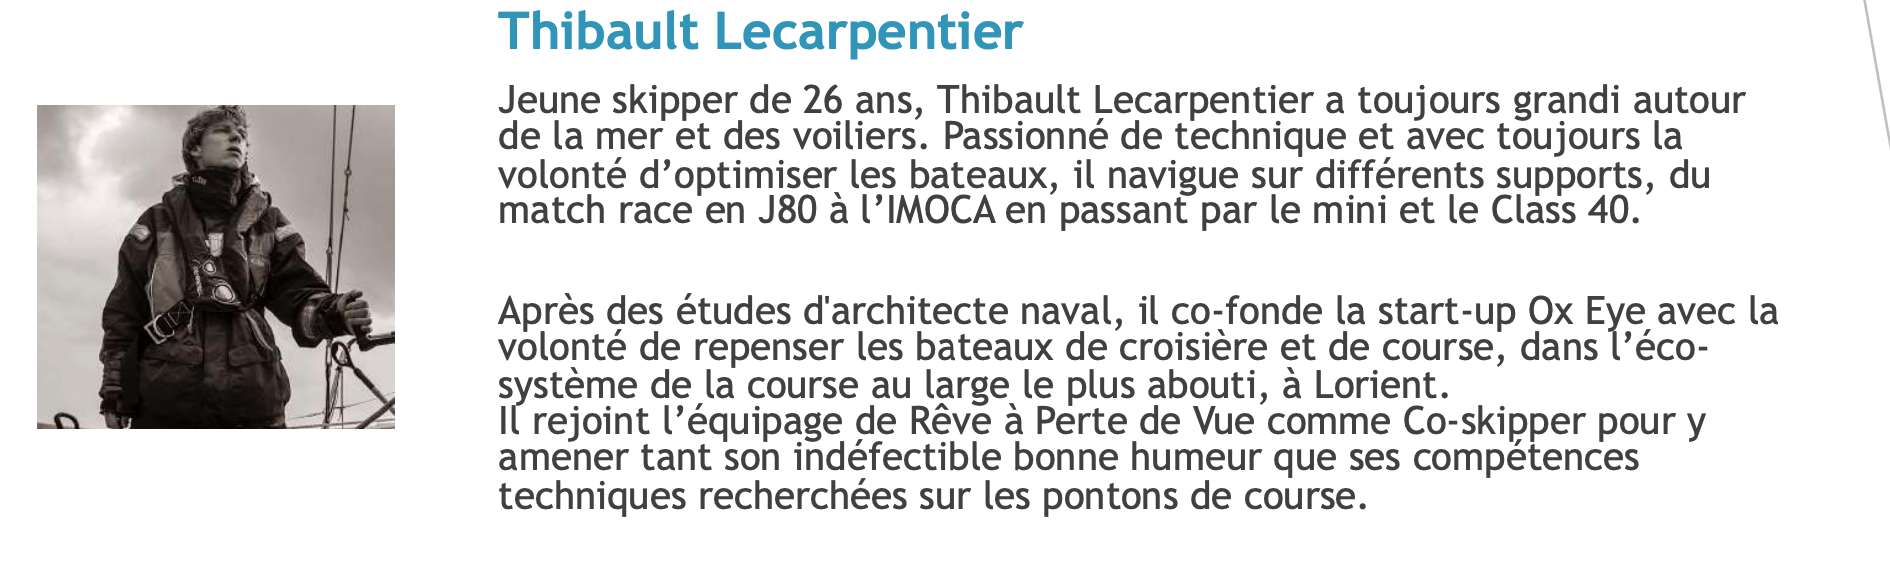 Jeune skipper de 26 ans, Thibault Lecarpentier a toujours grandi autour de la mer et des voiliers. Passionné de technique et avec toujours la volonté d’optimiser les bateaux, il navigue sur différents supports, du match race en J80 à l’IMOCA en passant par le mini et le Class 40.